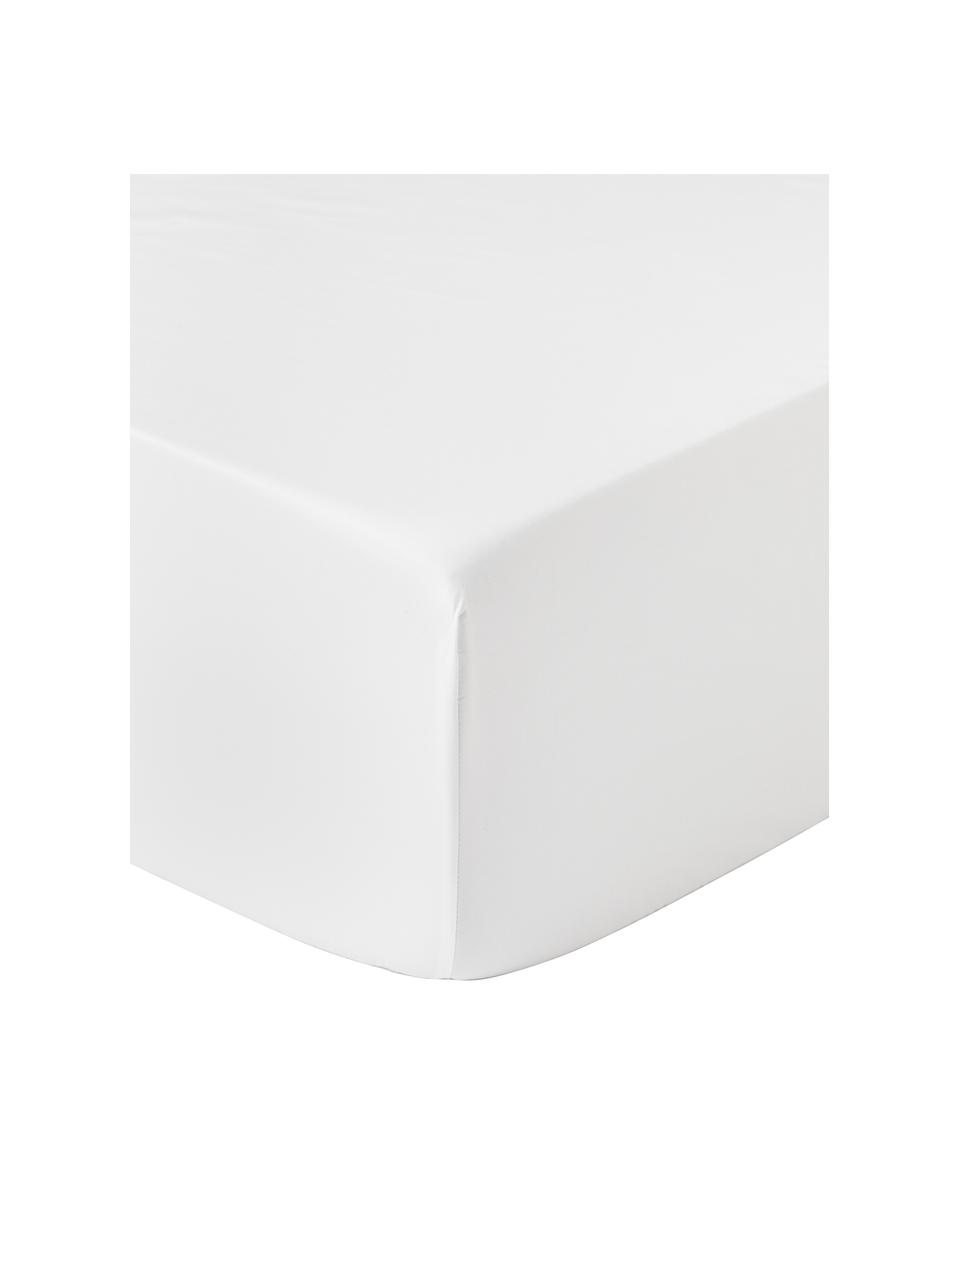 Sábana bajera de satén Premium, Blanco, Cama 90 cm (90 x 200 x 35 cm)